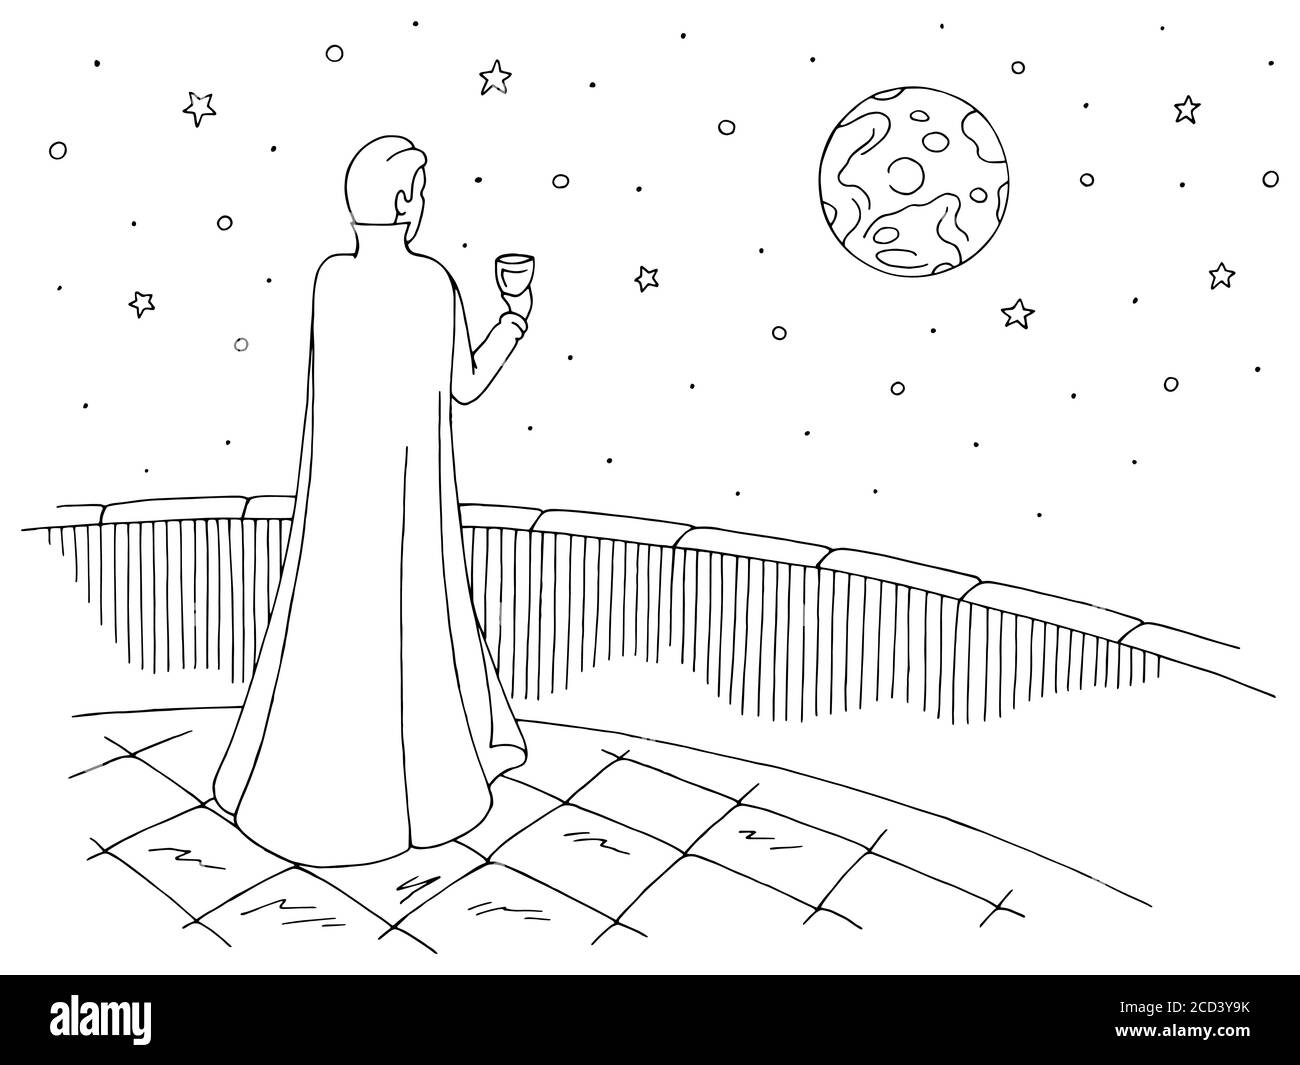 Vampir steht auf dem Balkon, trinkt aus Glas und schaut auf den Mond Grafik schwarz weiß Skizze Illustration Vektor Stock Vektor